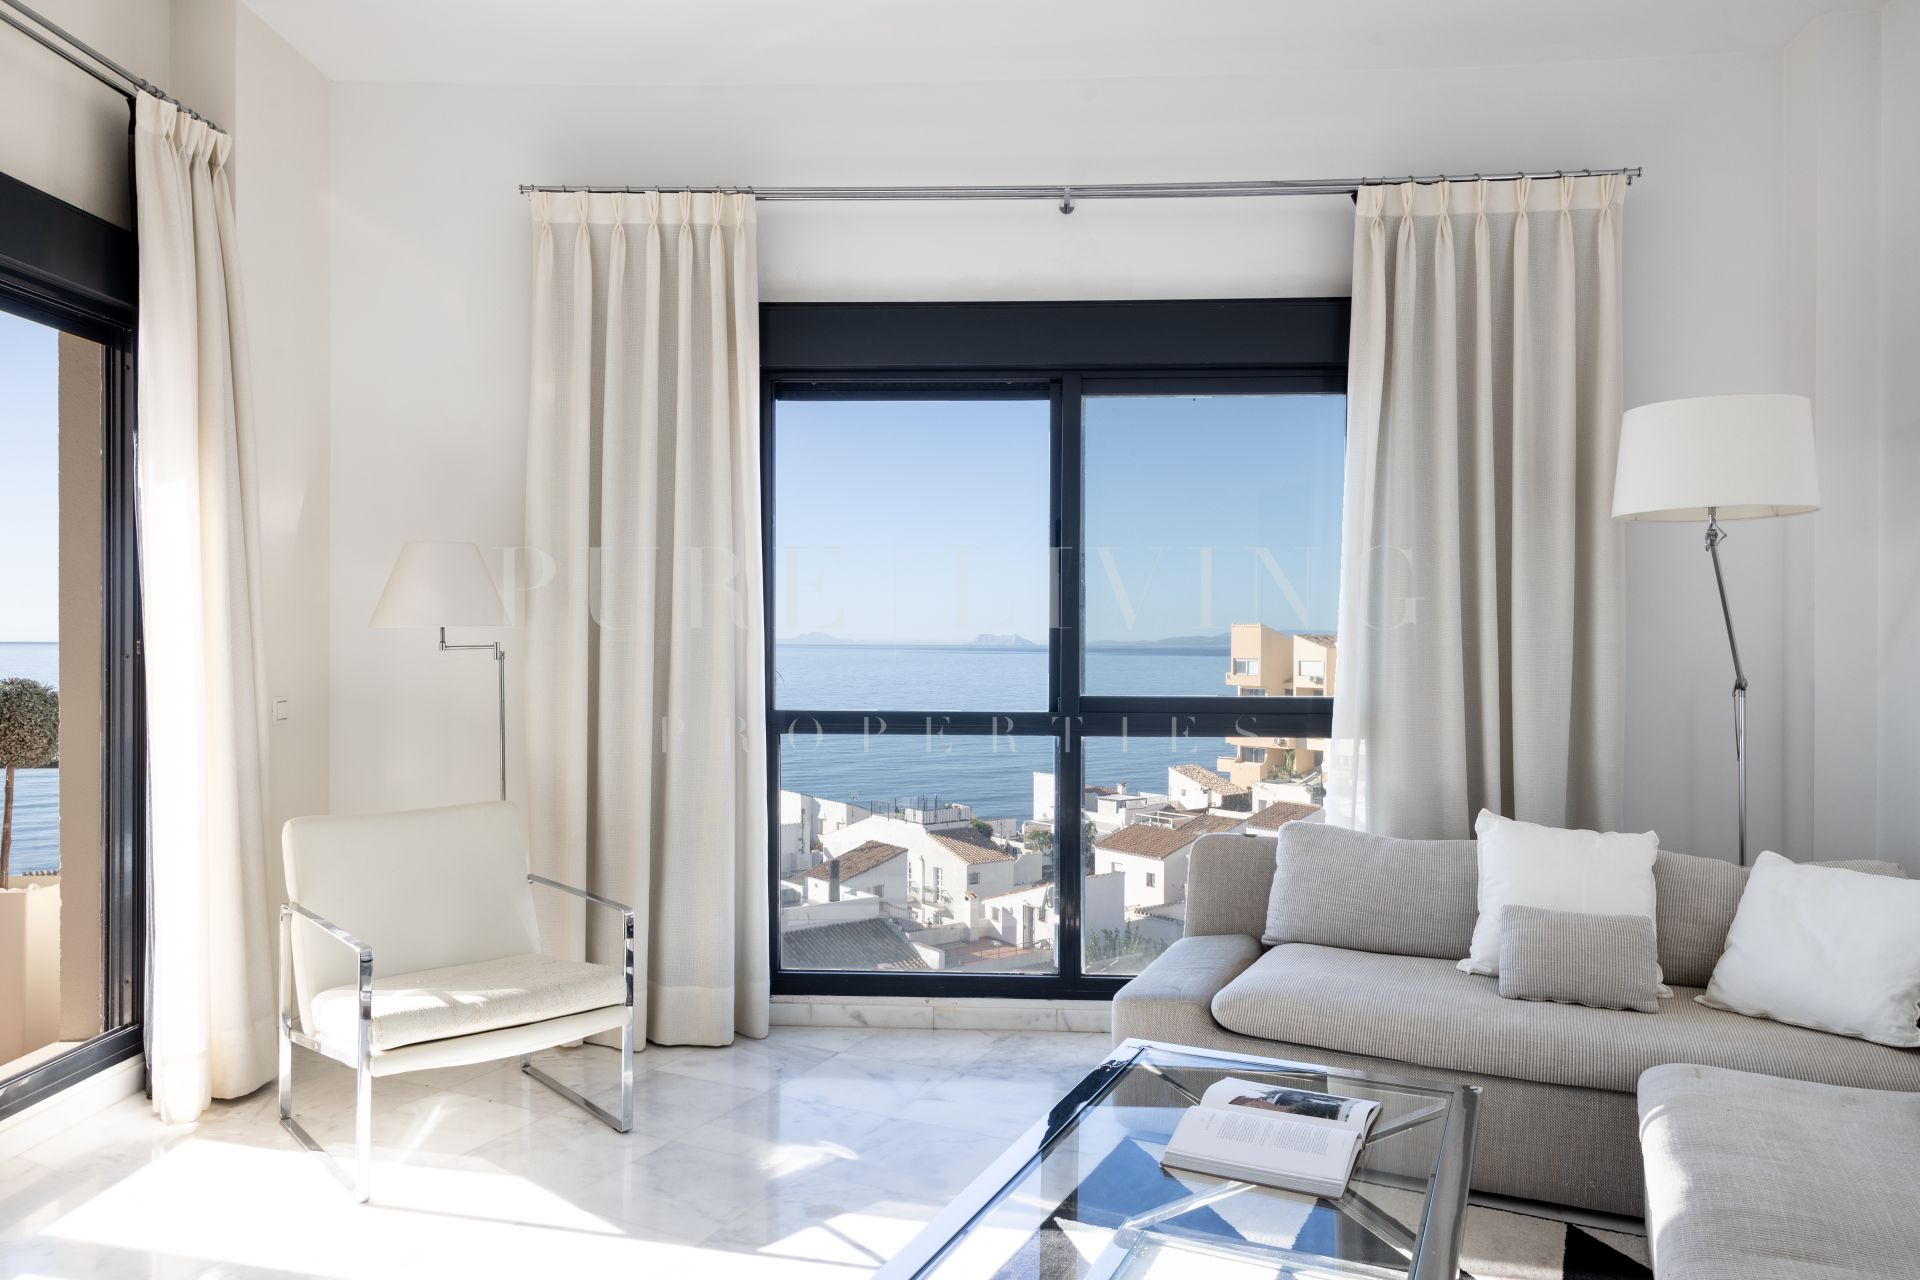 Superbe penthouse de trois chambres en bord de mer à Guadalmansa, Estepona